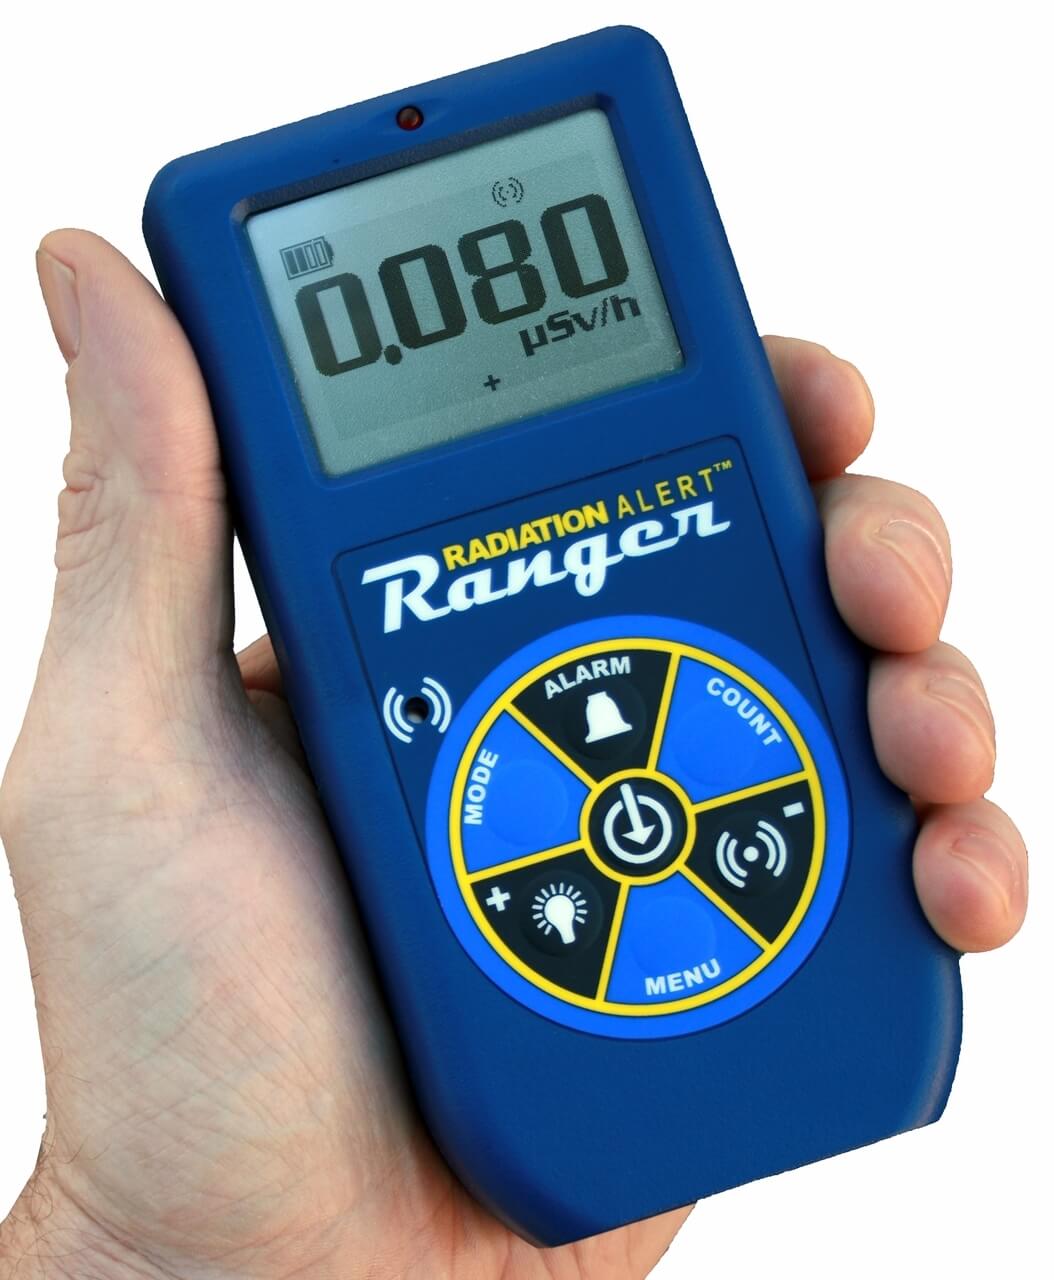 Radiation Alert Ranger Geigerzähler online kaufen.